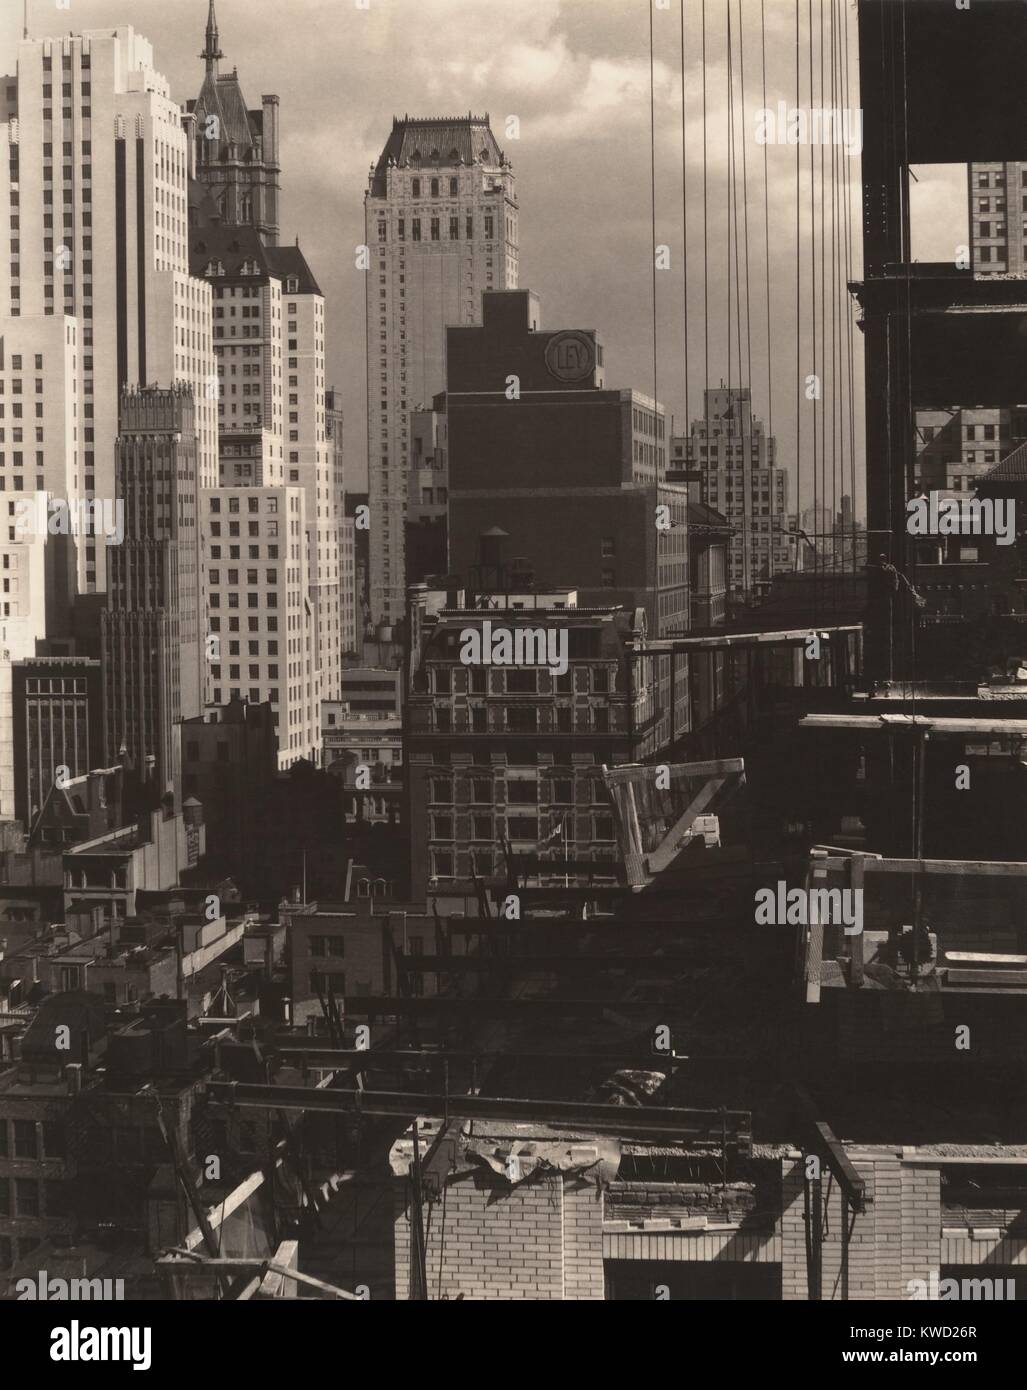 Dalla mia finestra in un AMERICAN PLACE, a nord, da Alfred Stieglitz, 1931. New York City edifici fotografati da Stieglitzs XVII-piano galleria d'arte, un American Place, a 53rd Street e Madison Avenue (BSLOC 2017 20 182) Foto Stock